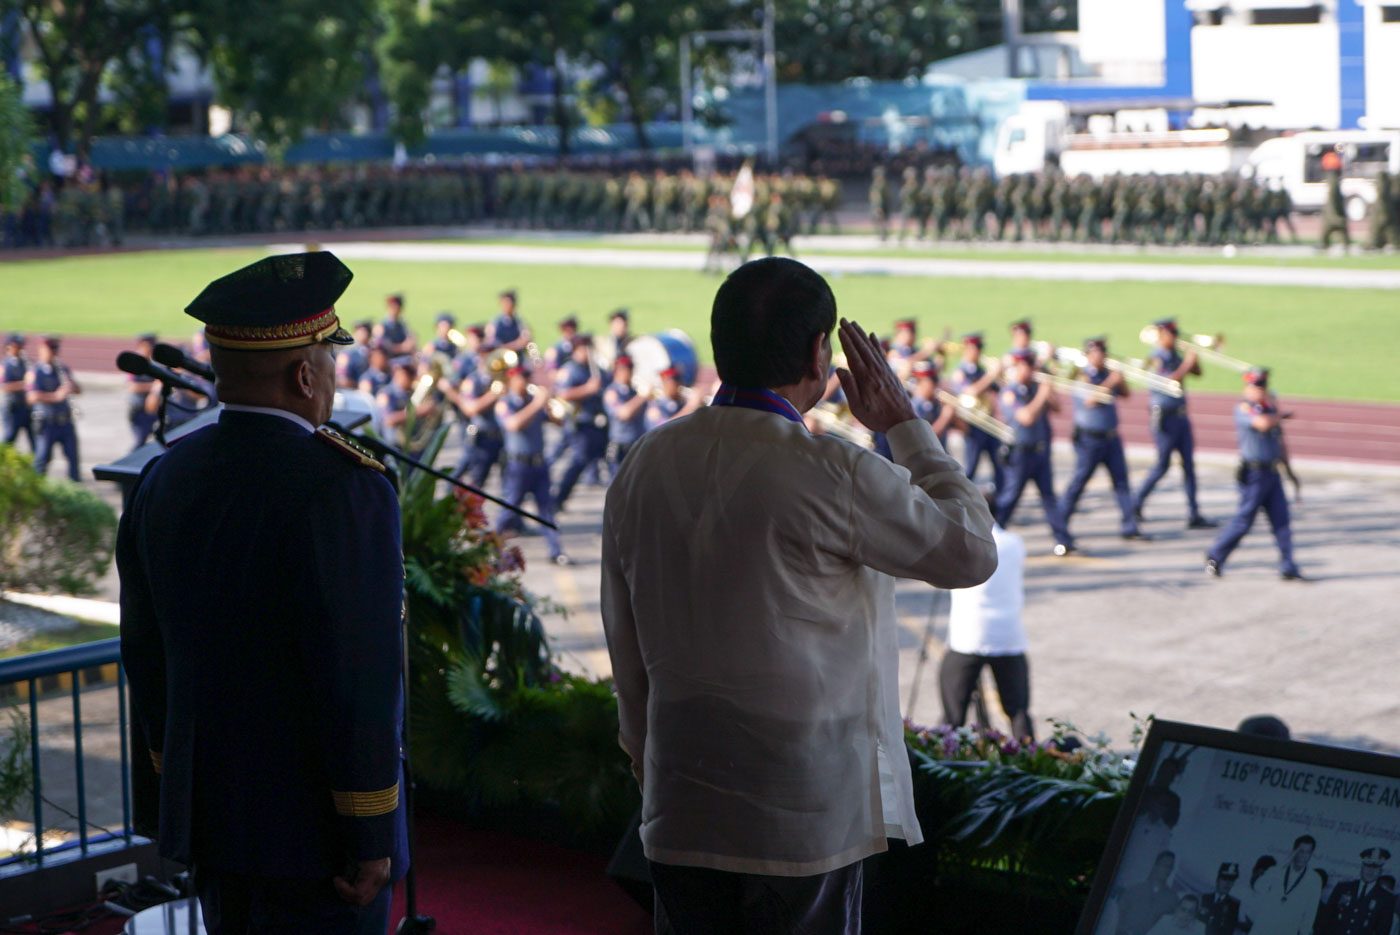 After Kian slay, Duterte tempers messaging on drug war